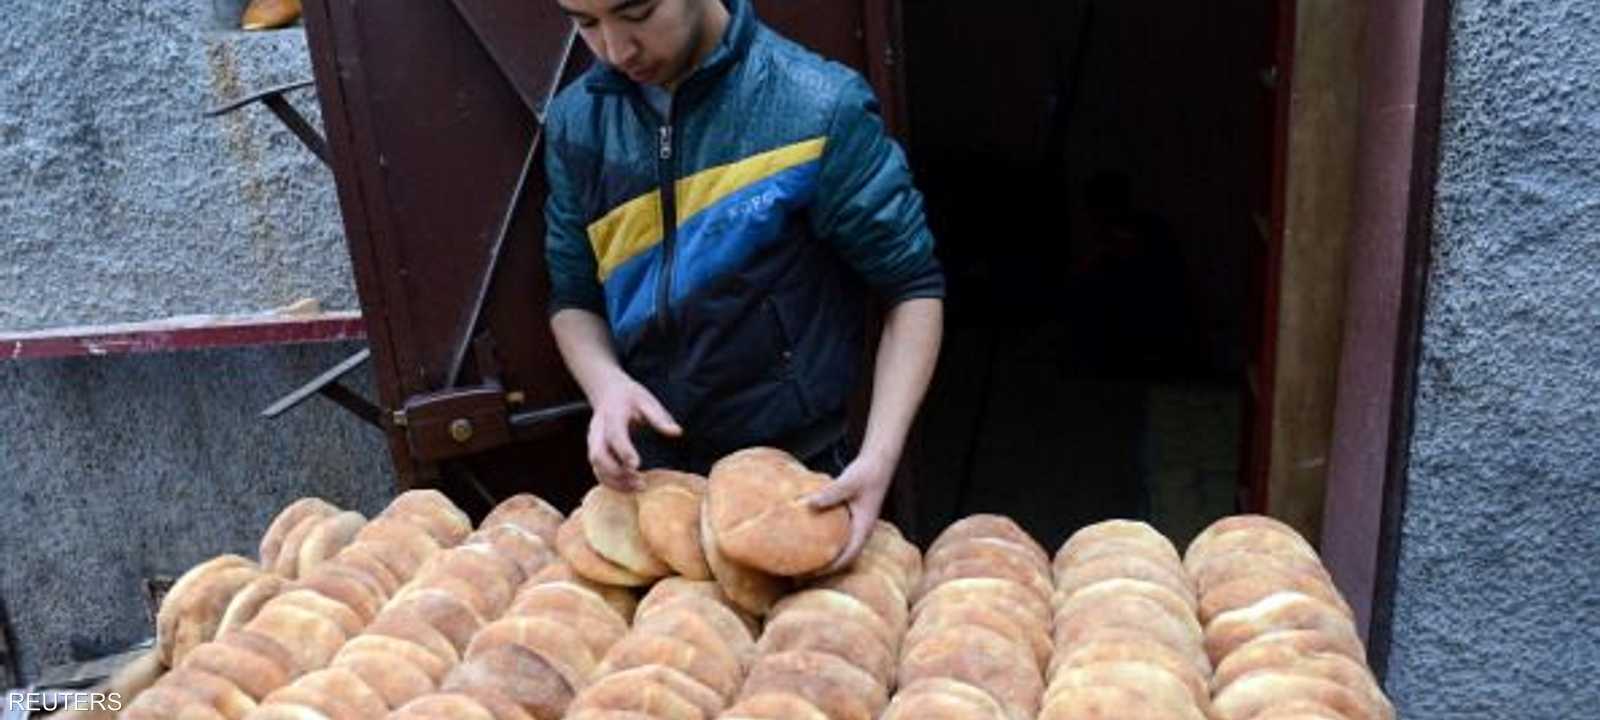 المخابز في المغرب أضربت لمدة 48 ساعة للضغط من أجل زيدة أسعار الخبز. (أرشيف)